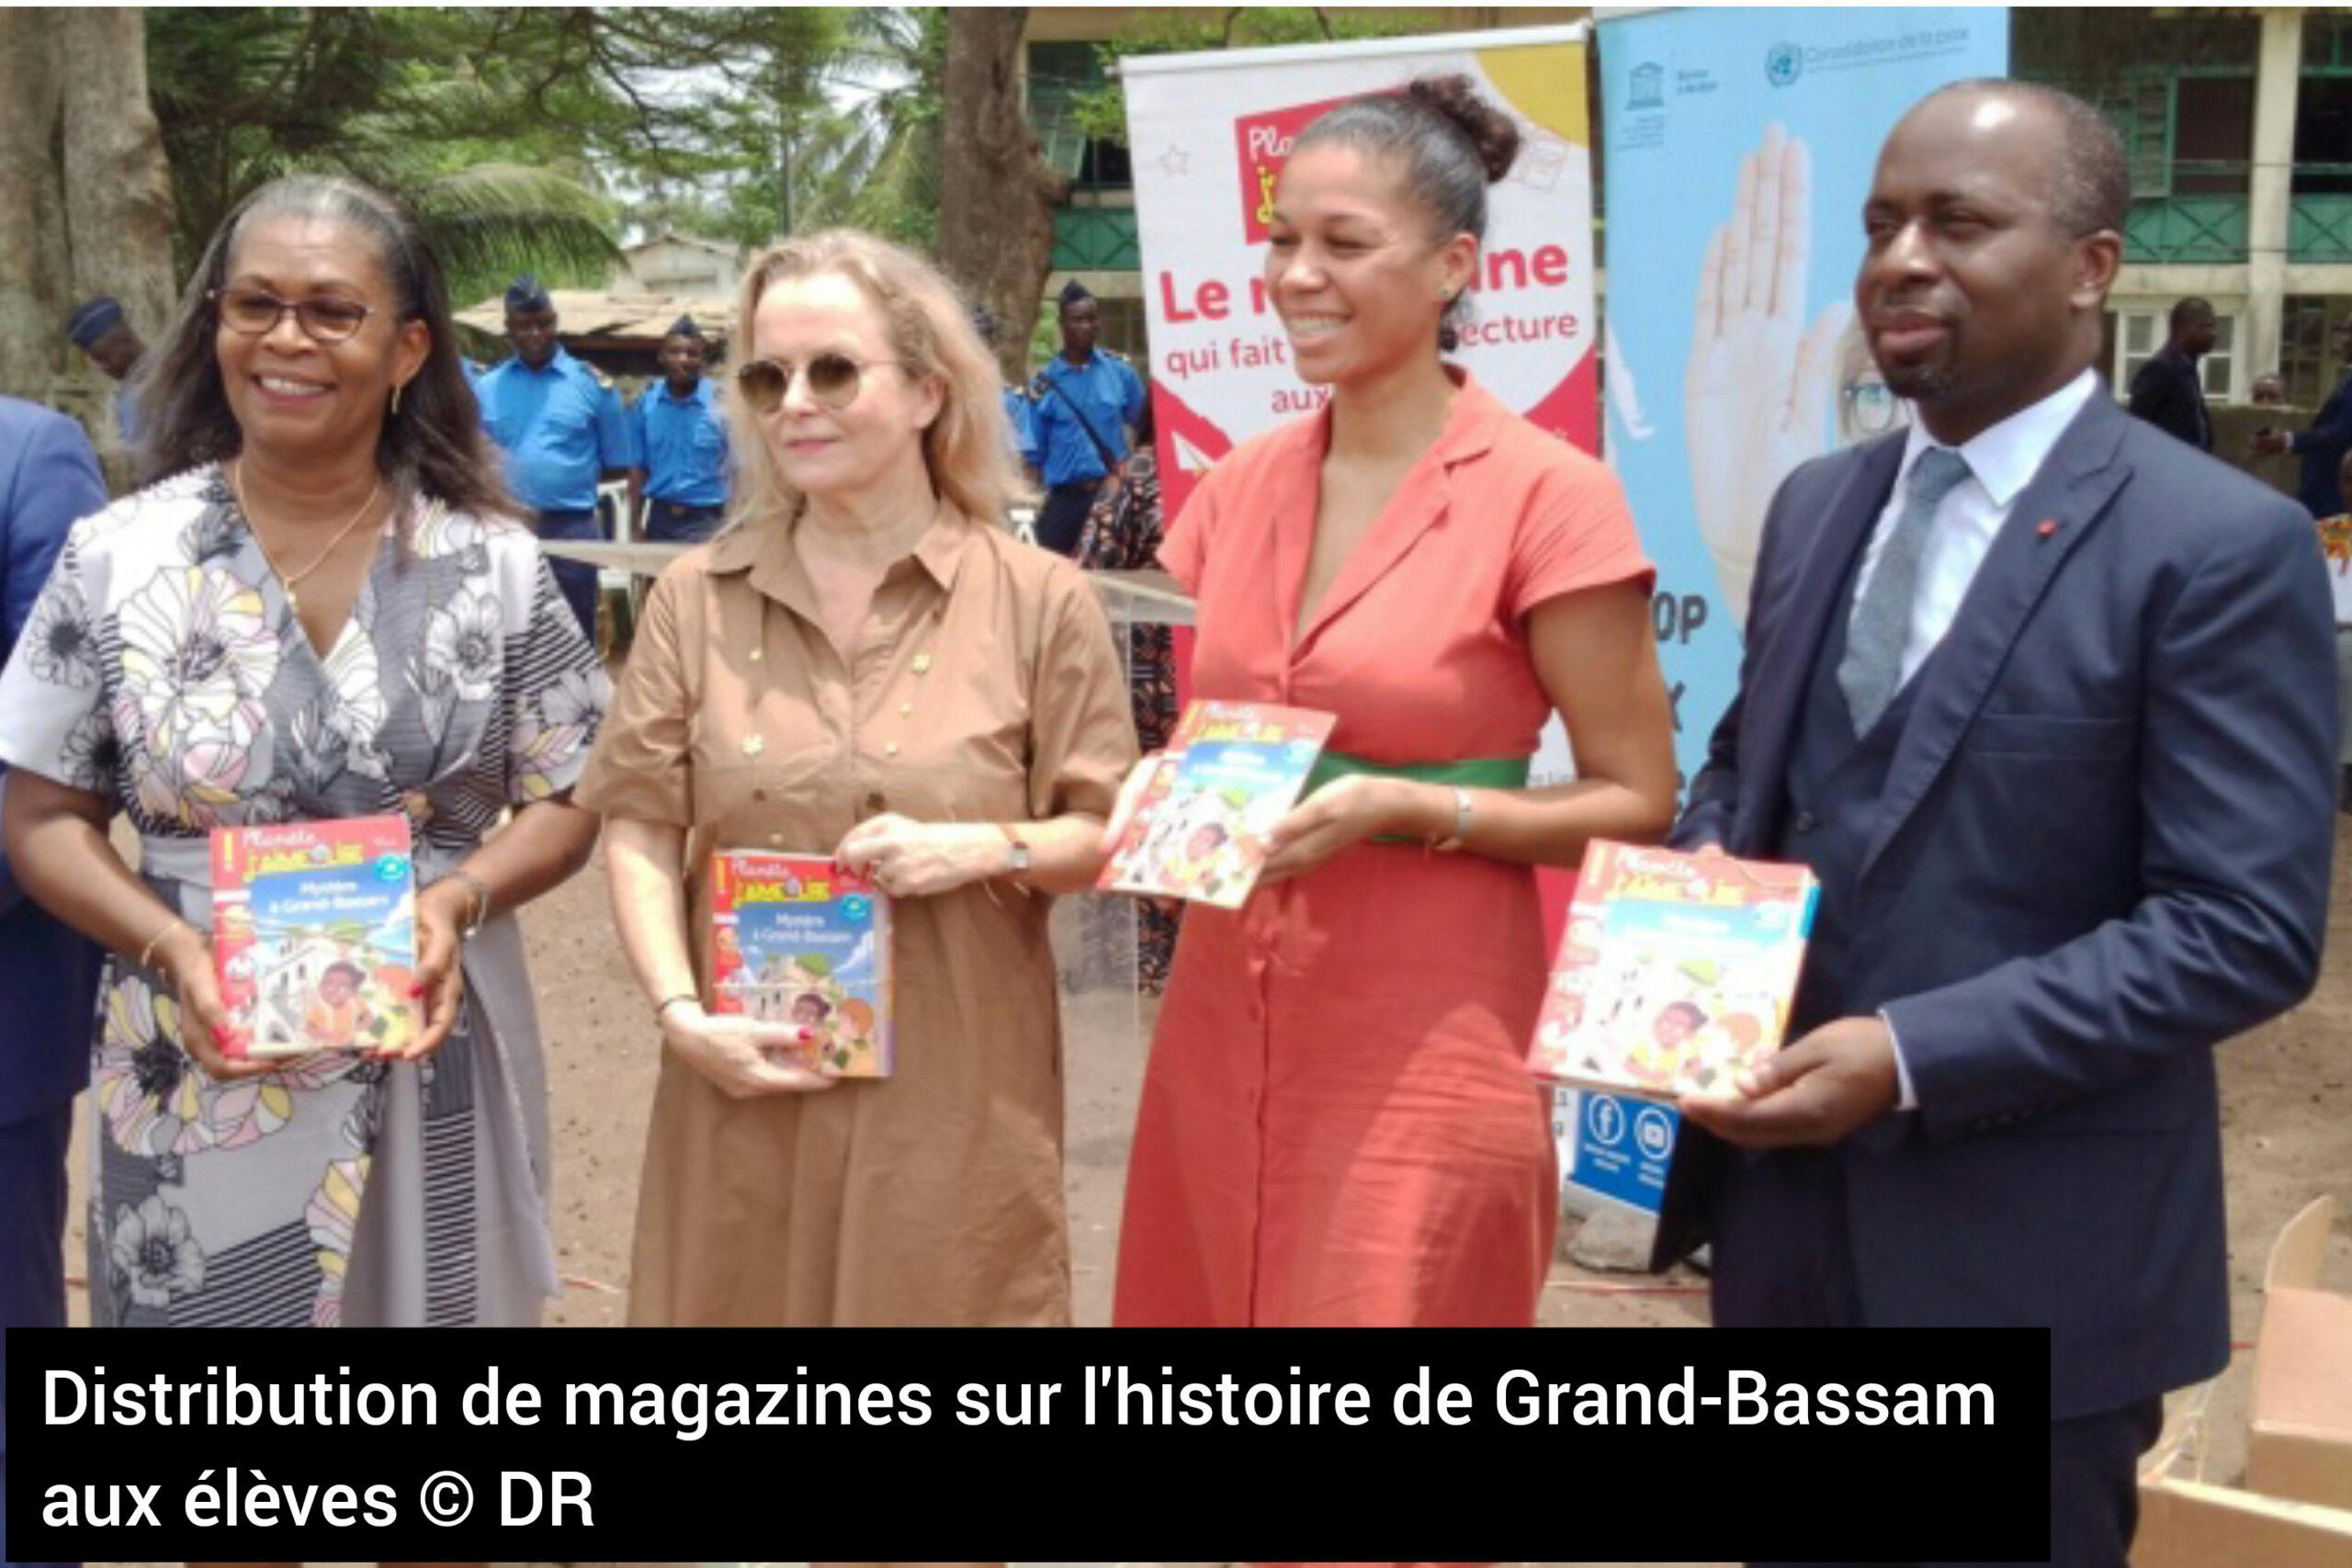 Valorisation du patrimoine culturel : Anne Lemaistre donne les raisons de la distribution des magazines aux élèves de Grand-Bassam